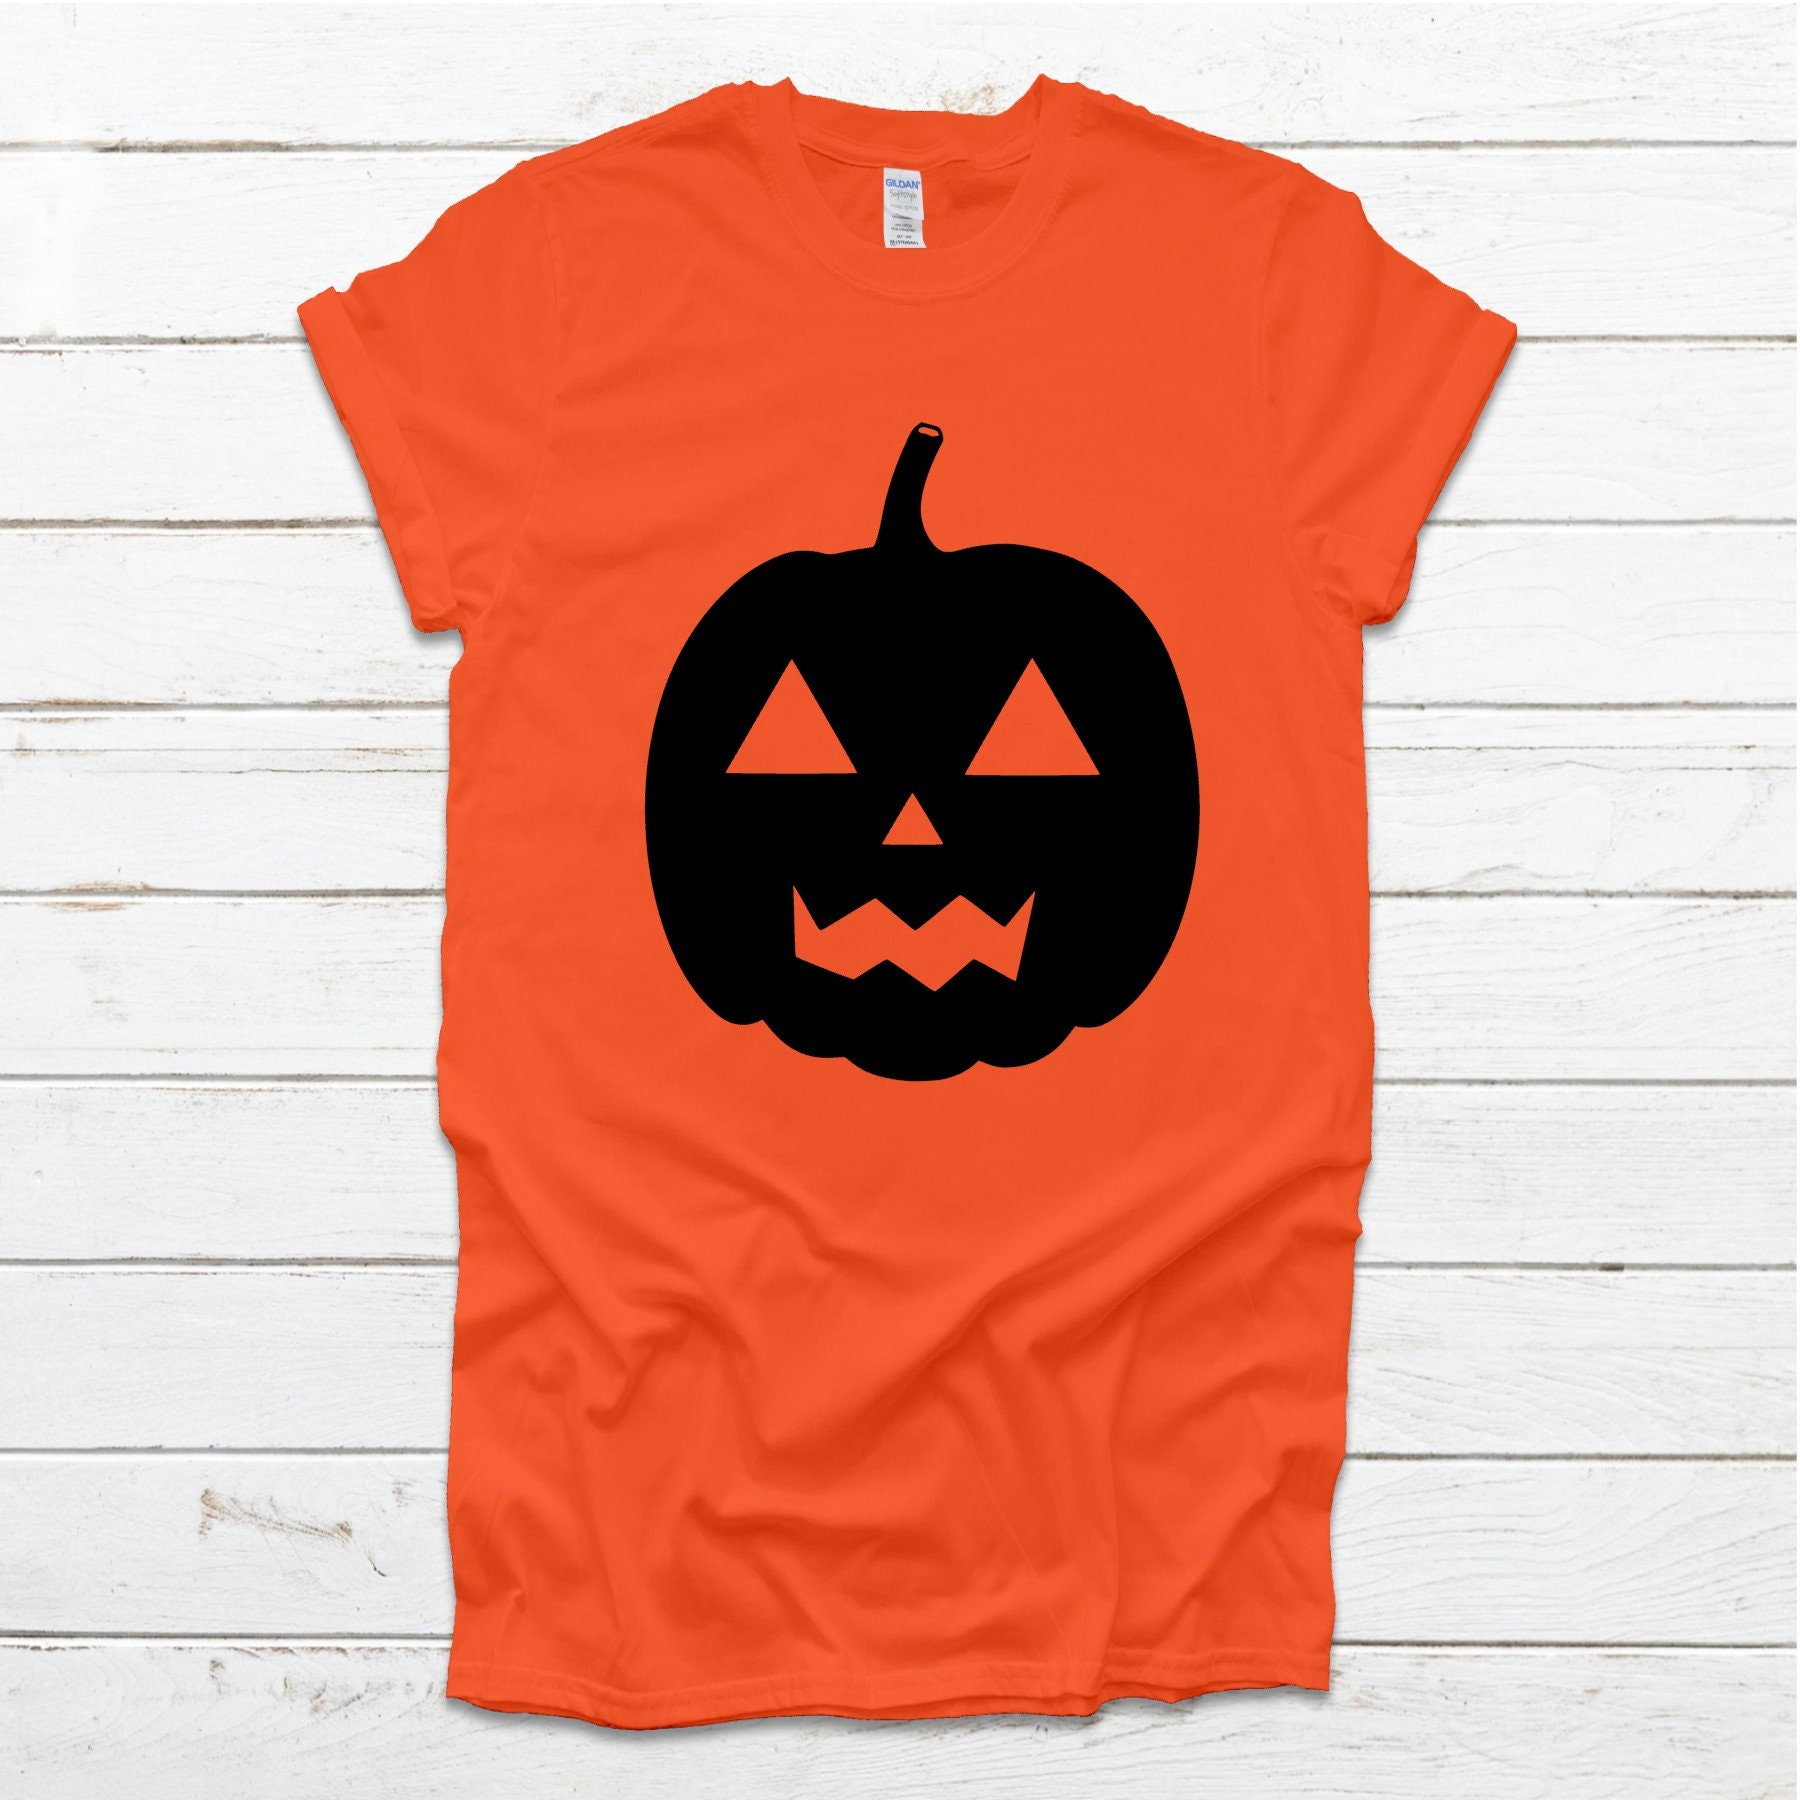 Halloween Pumpkin Carving Patch Shirt